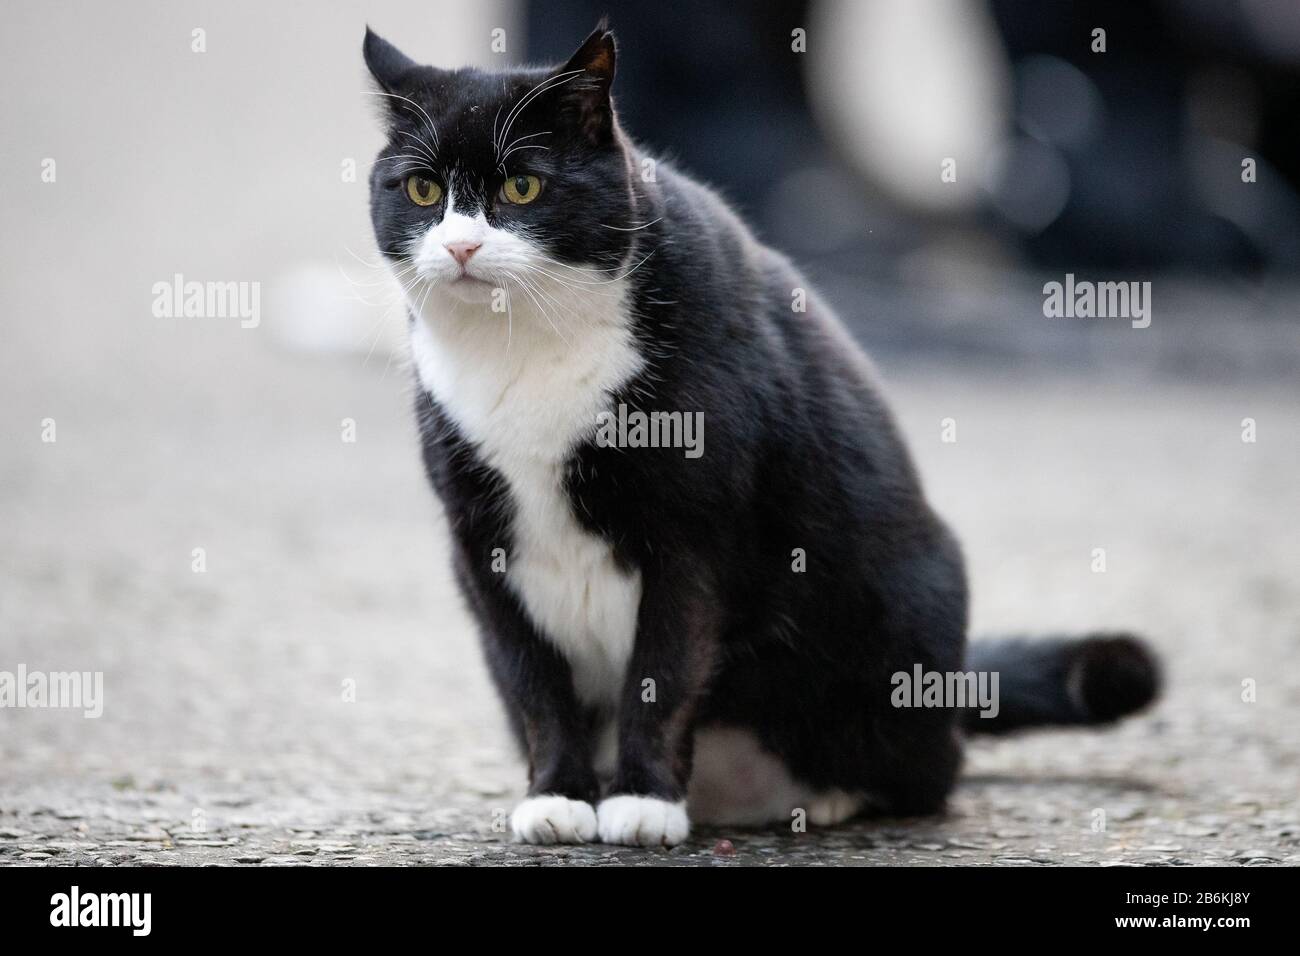 Larry le chat à l'extérieur du 11 Downing Street, Londres, comme le chancelier Rishi Sunak se rend à la Chambre des communes pour présenter son budget. Banque D'Images